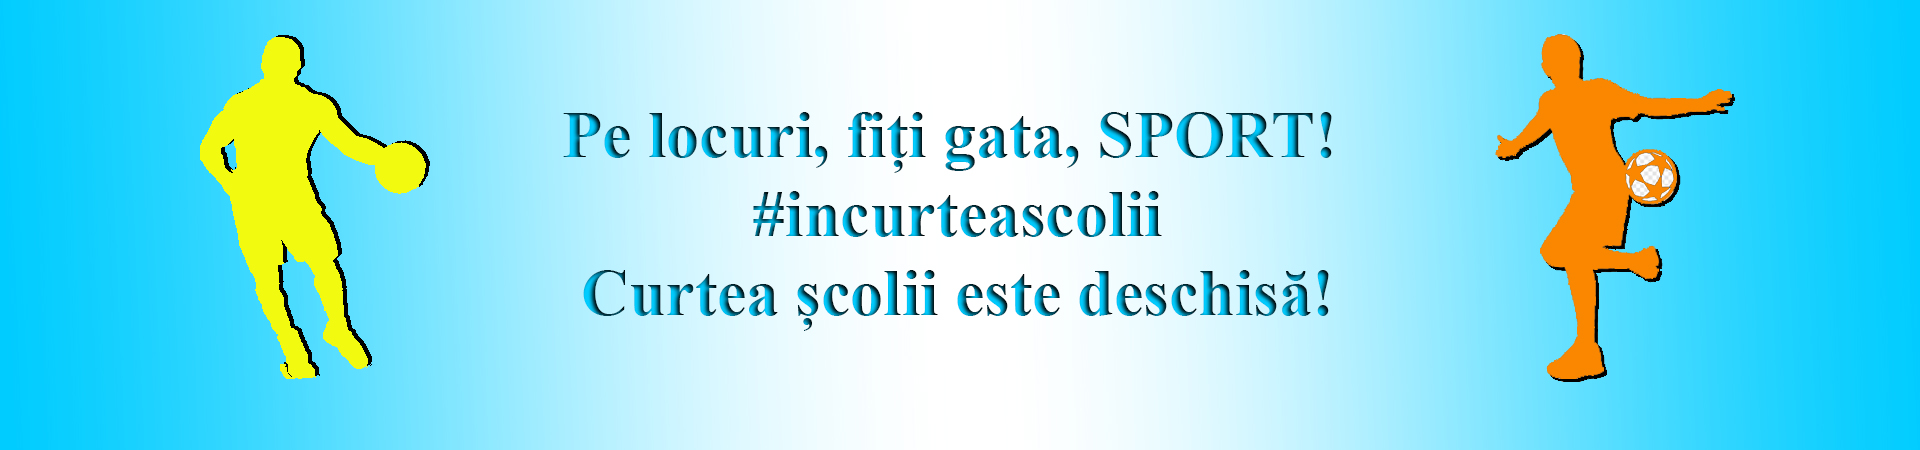 Pe locuri, fiți gata, SPORT! #incurteascolii